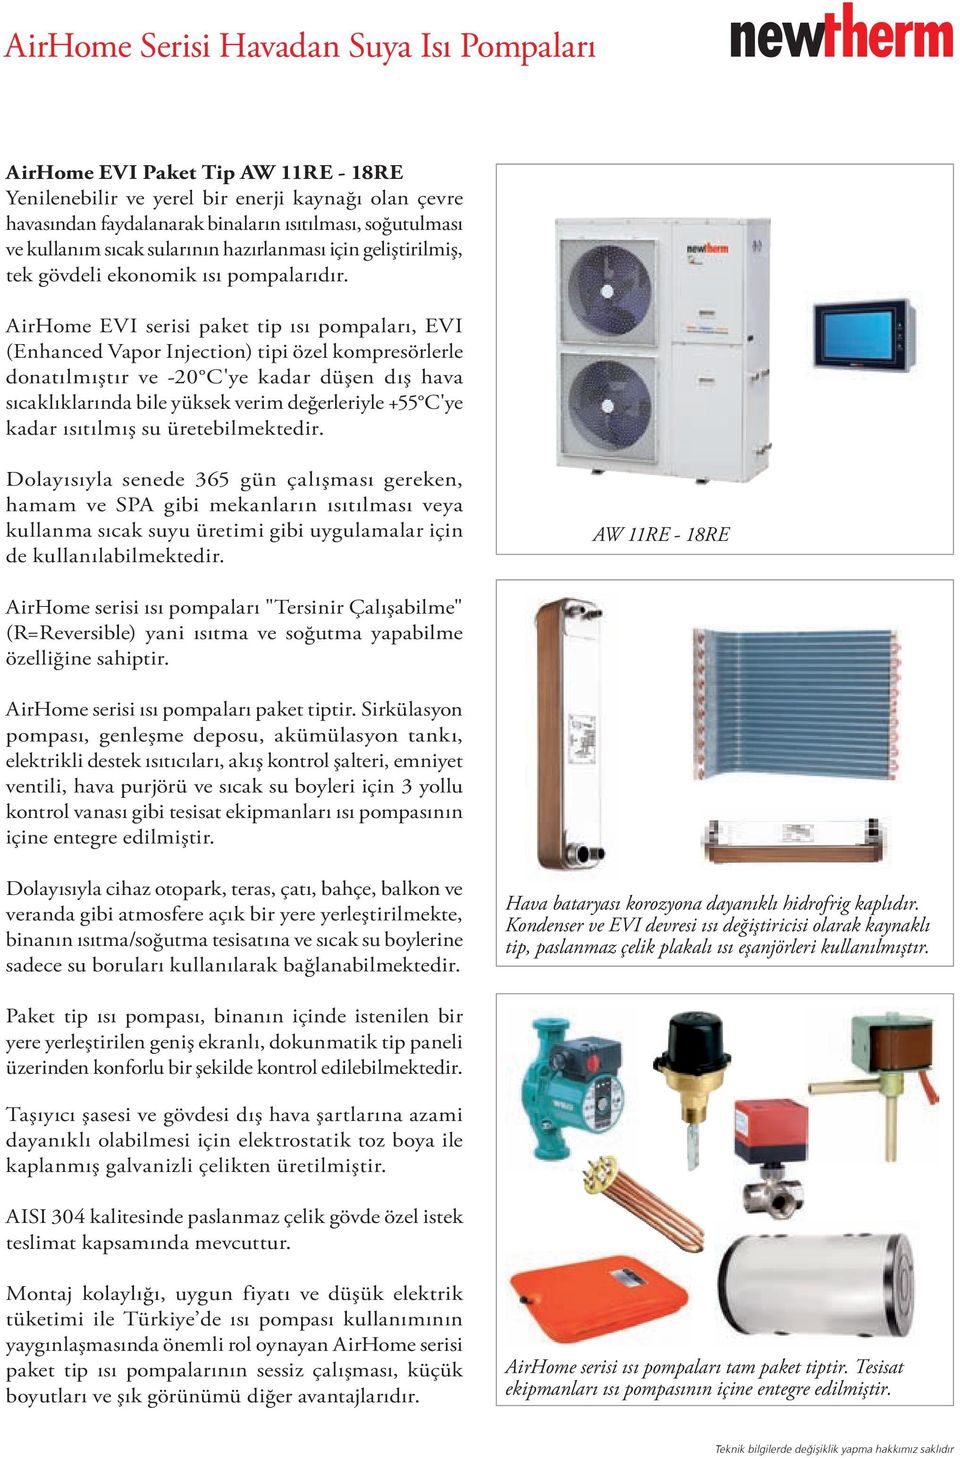 AirHome EVI serisi paket tip ısı pompaları, EVI (Enhanced Vapor Injection) tipi özel kompresörlerle donatılmıştır ve -20 C'ye kadar düşen dış hava sıcaklıklarında bile yüksek verim değerleriyle +55